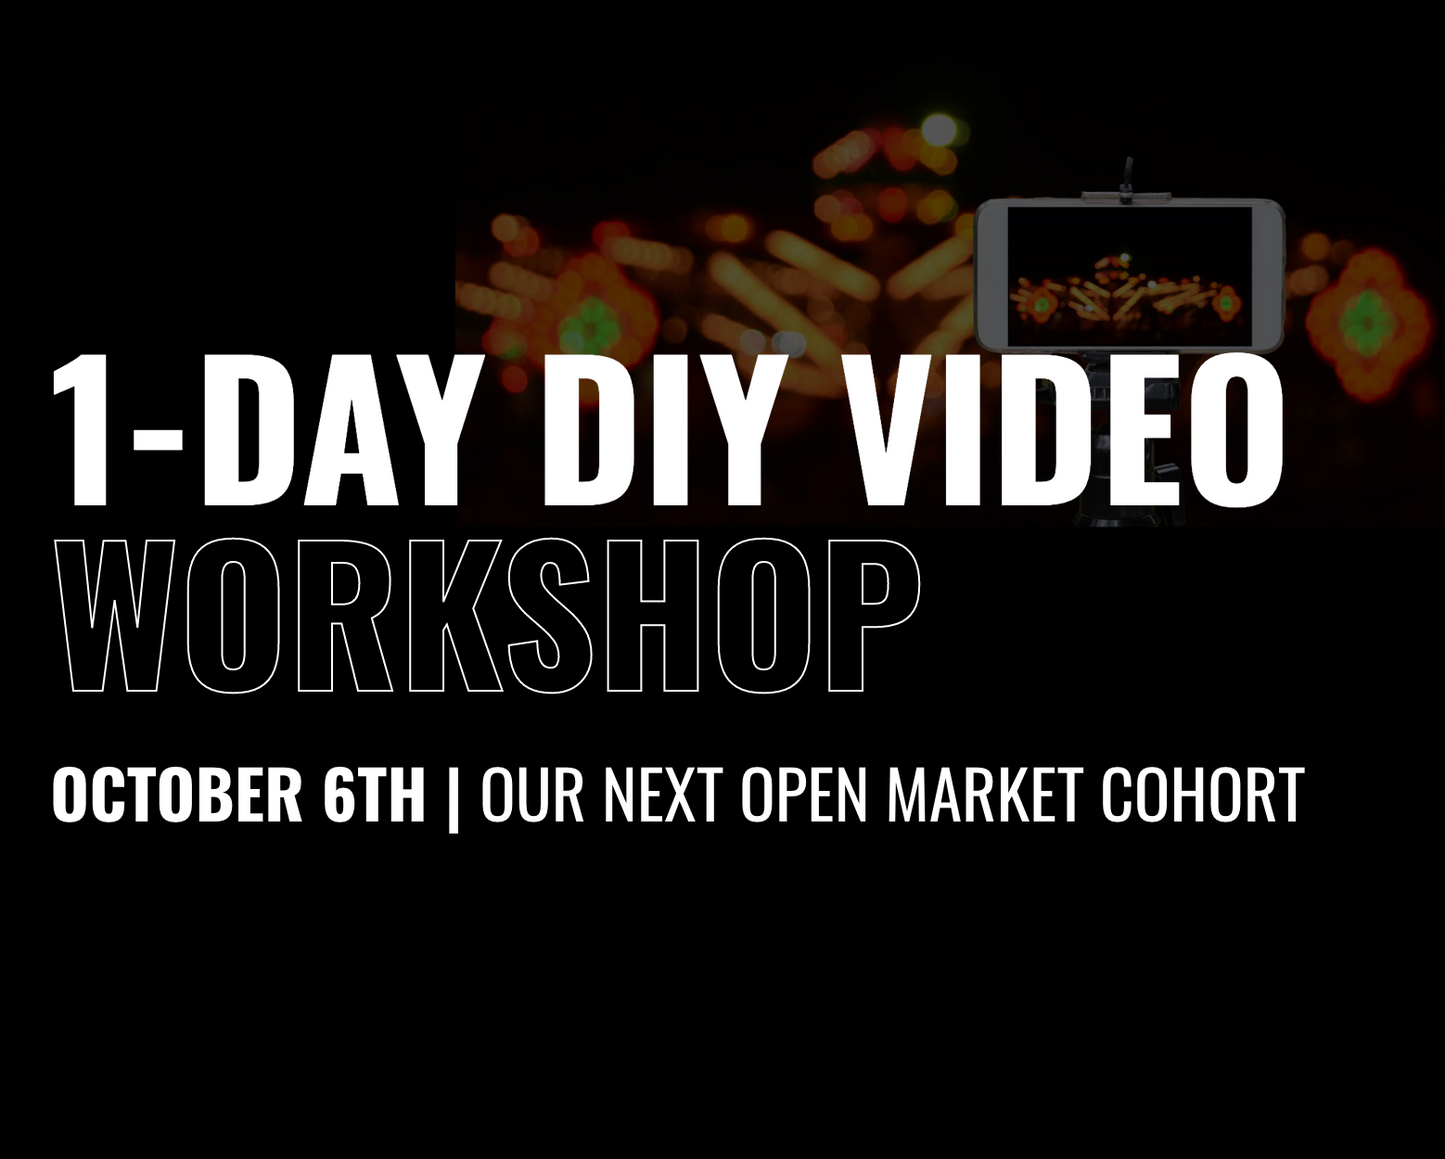 1-DAY DIY VIDEO WORKSHOP - October 6th, 2022